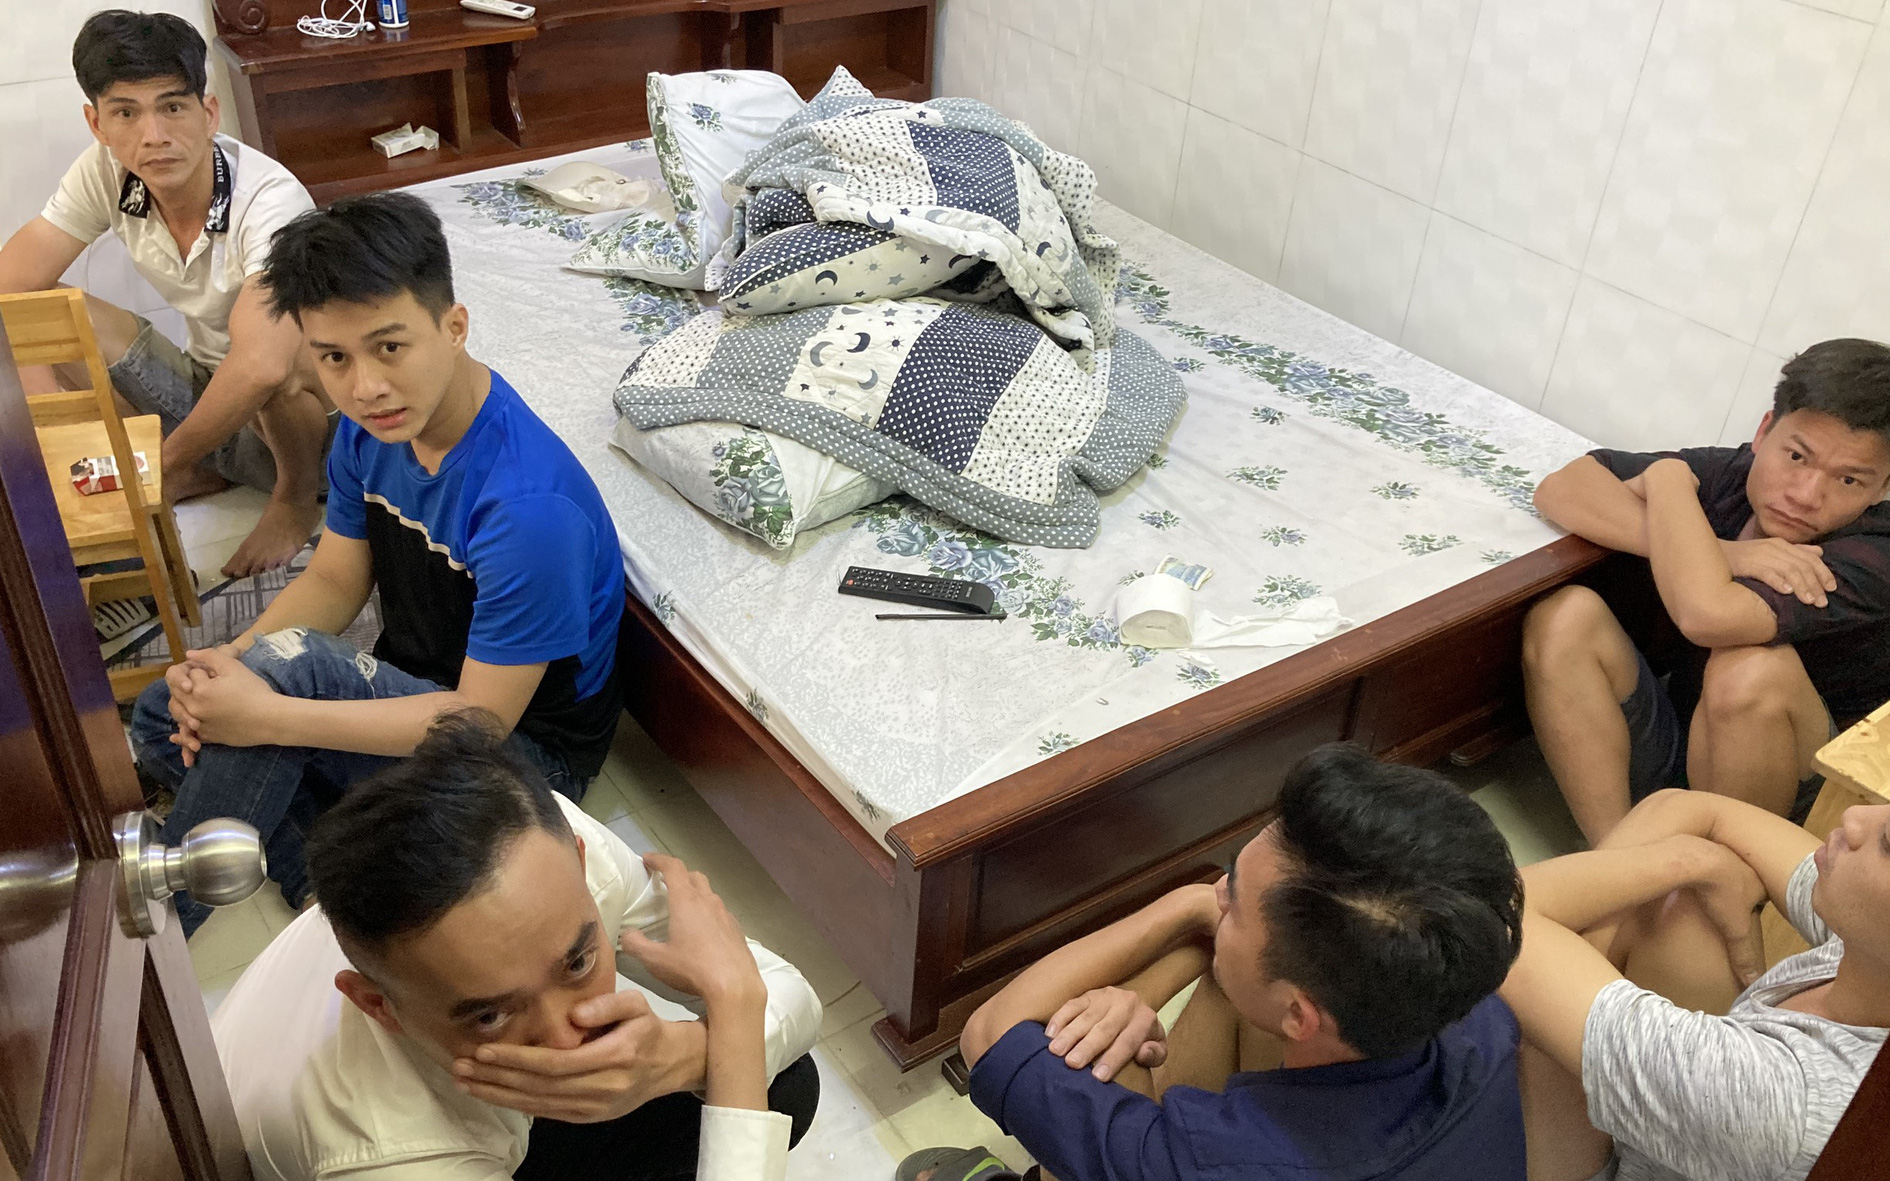 Phát hiện nhóm "dân chơi" tổ chức phê ma túy tại nhà nghỉ ở Sài Gòn